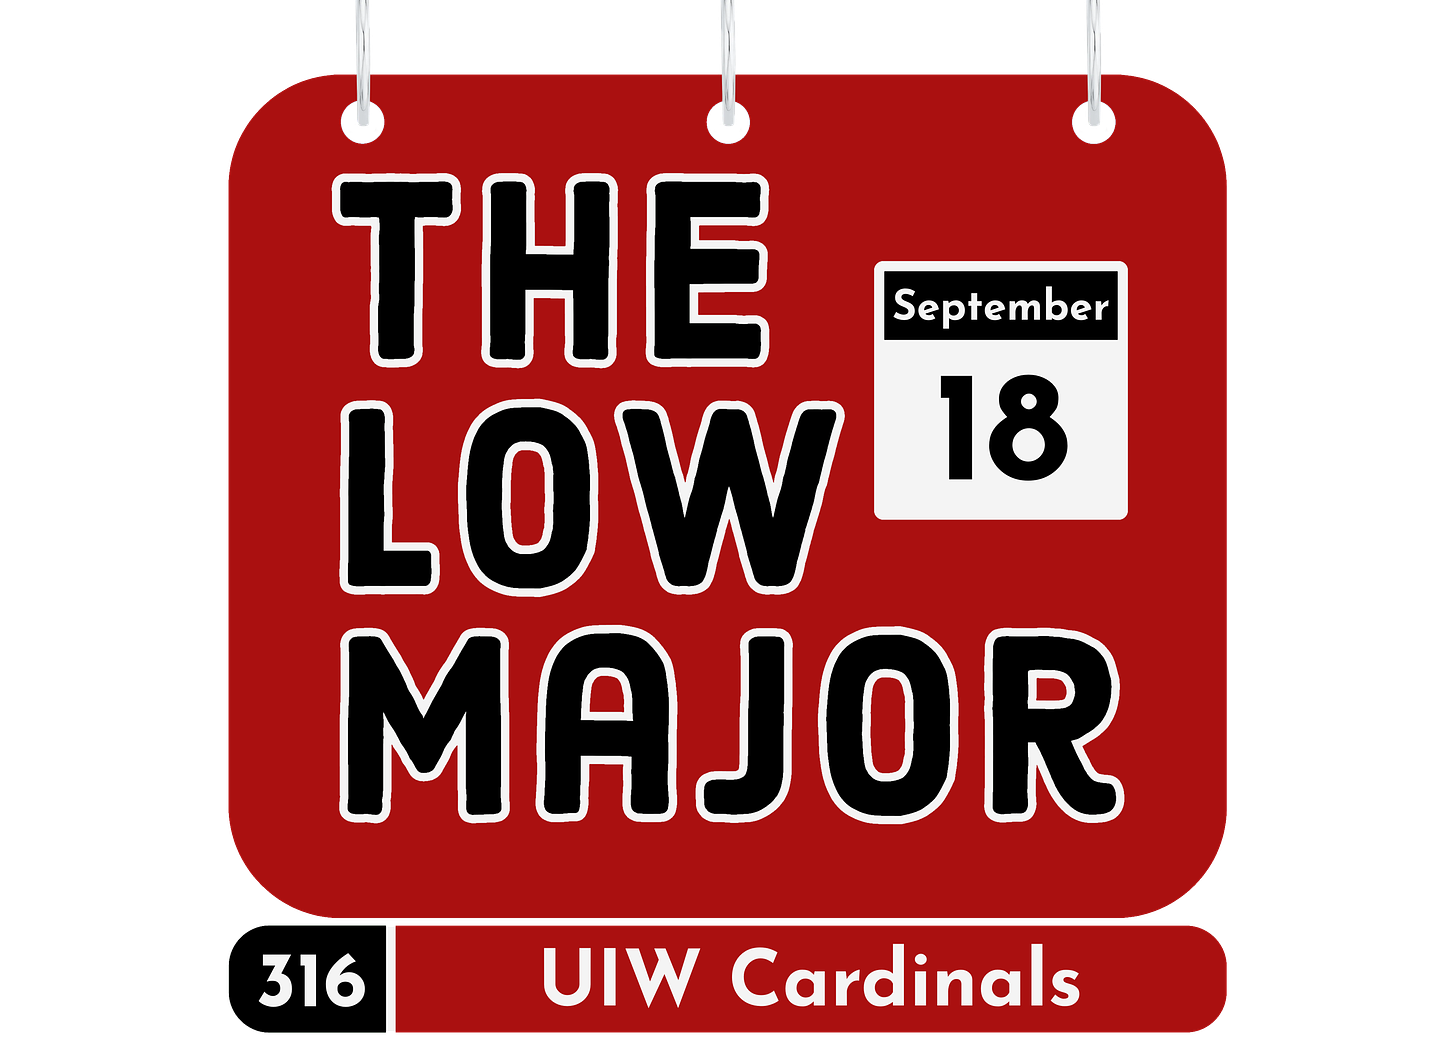 Name-a-Day UIW logo